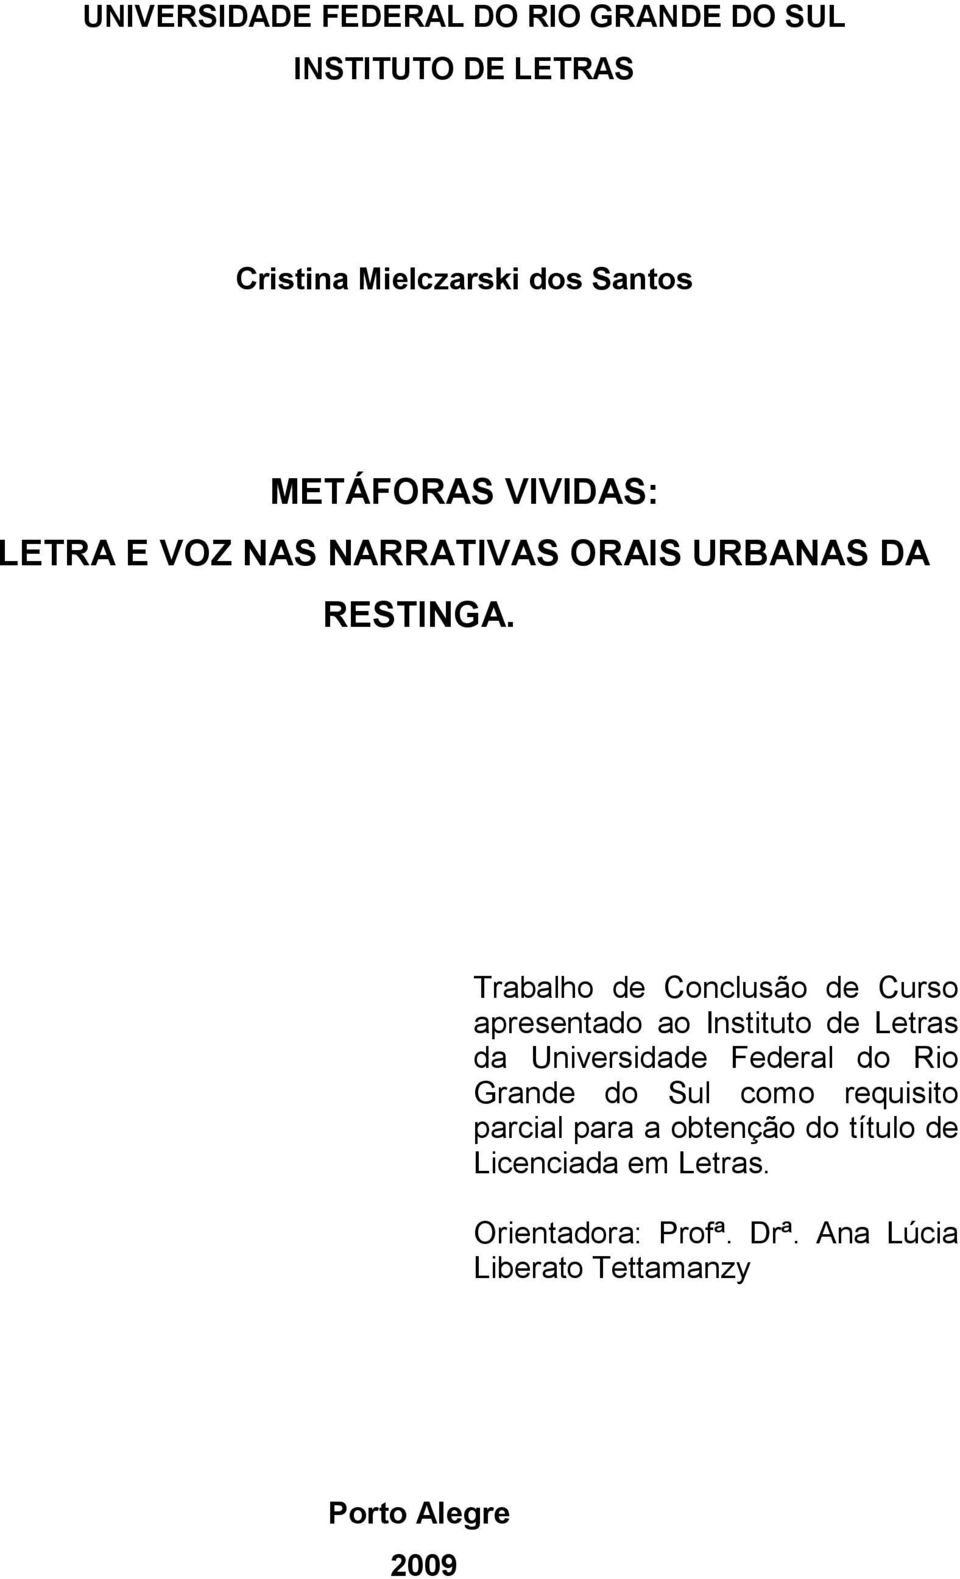 Trabalho de Conclusão de Curso apresentado ao Instituto de Letras da Universidade Federal do Rio Grande do